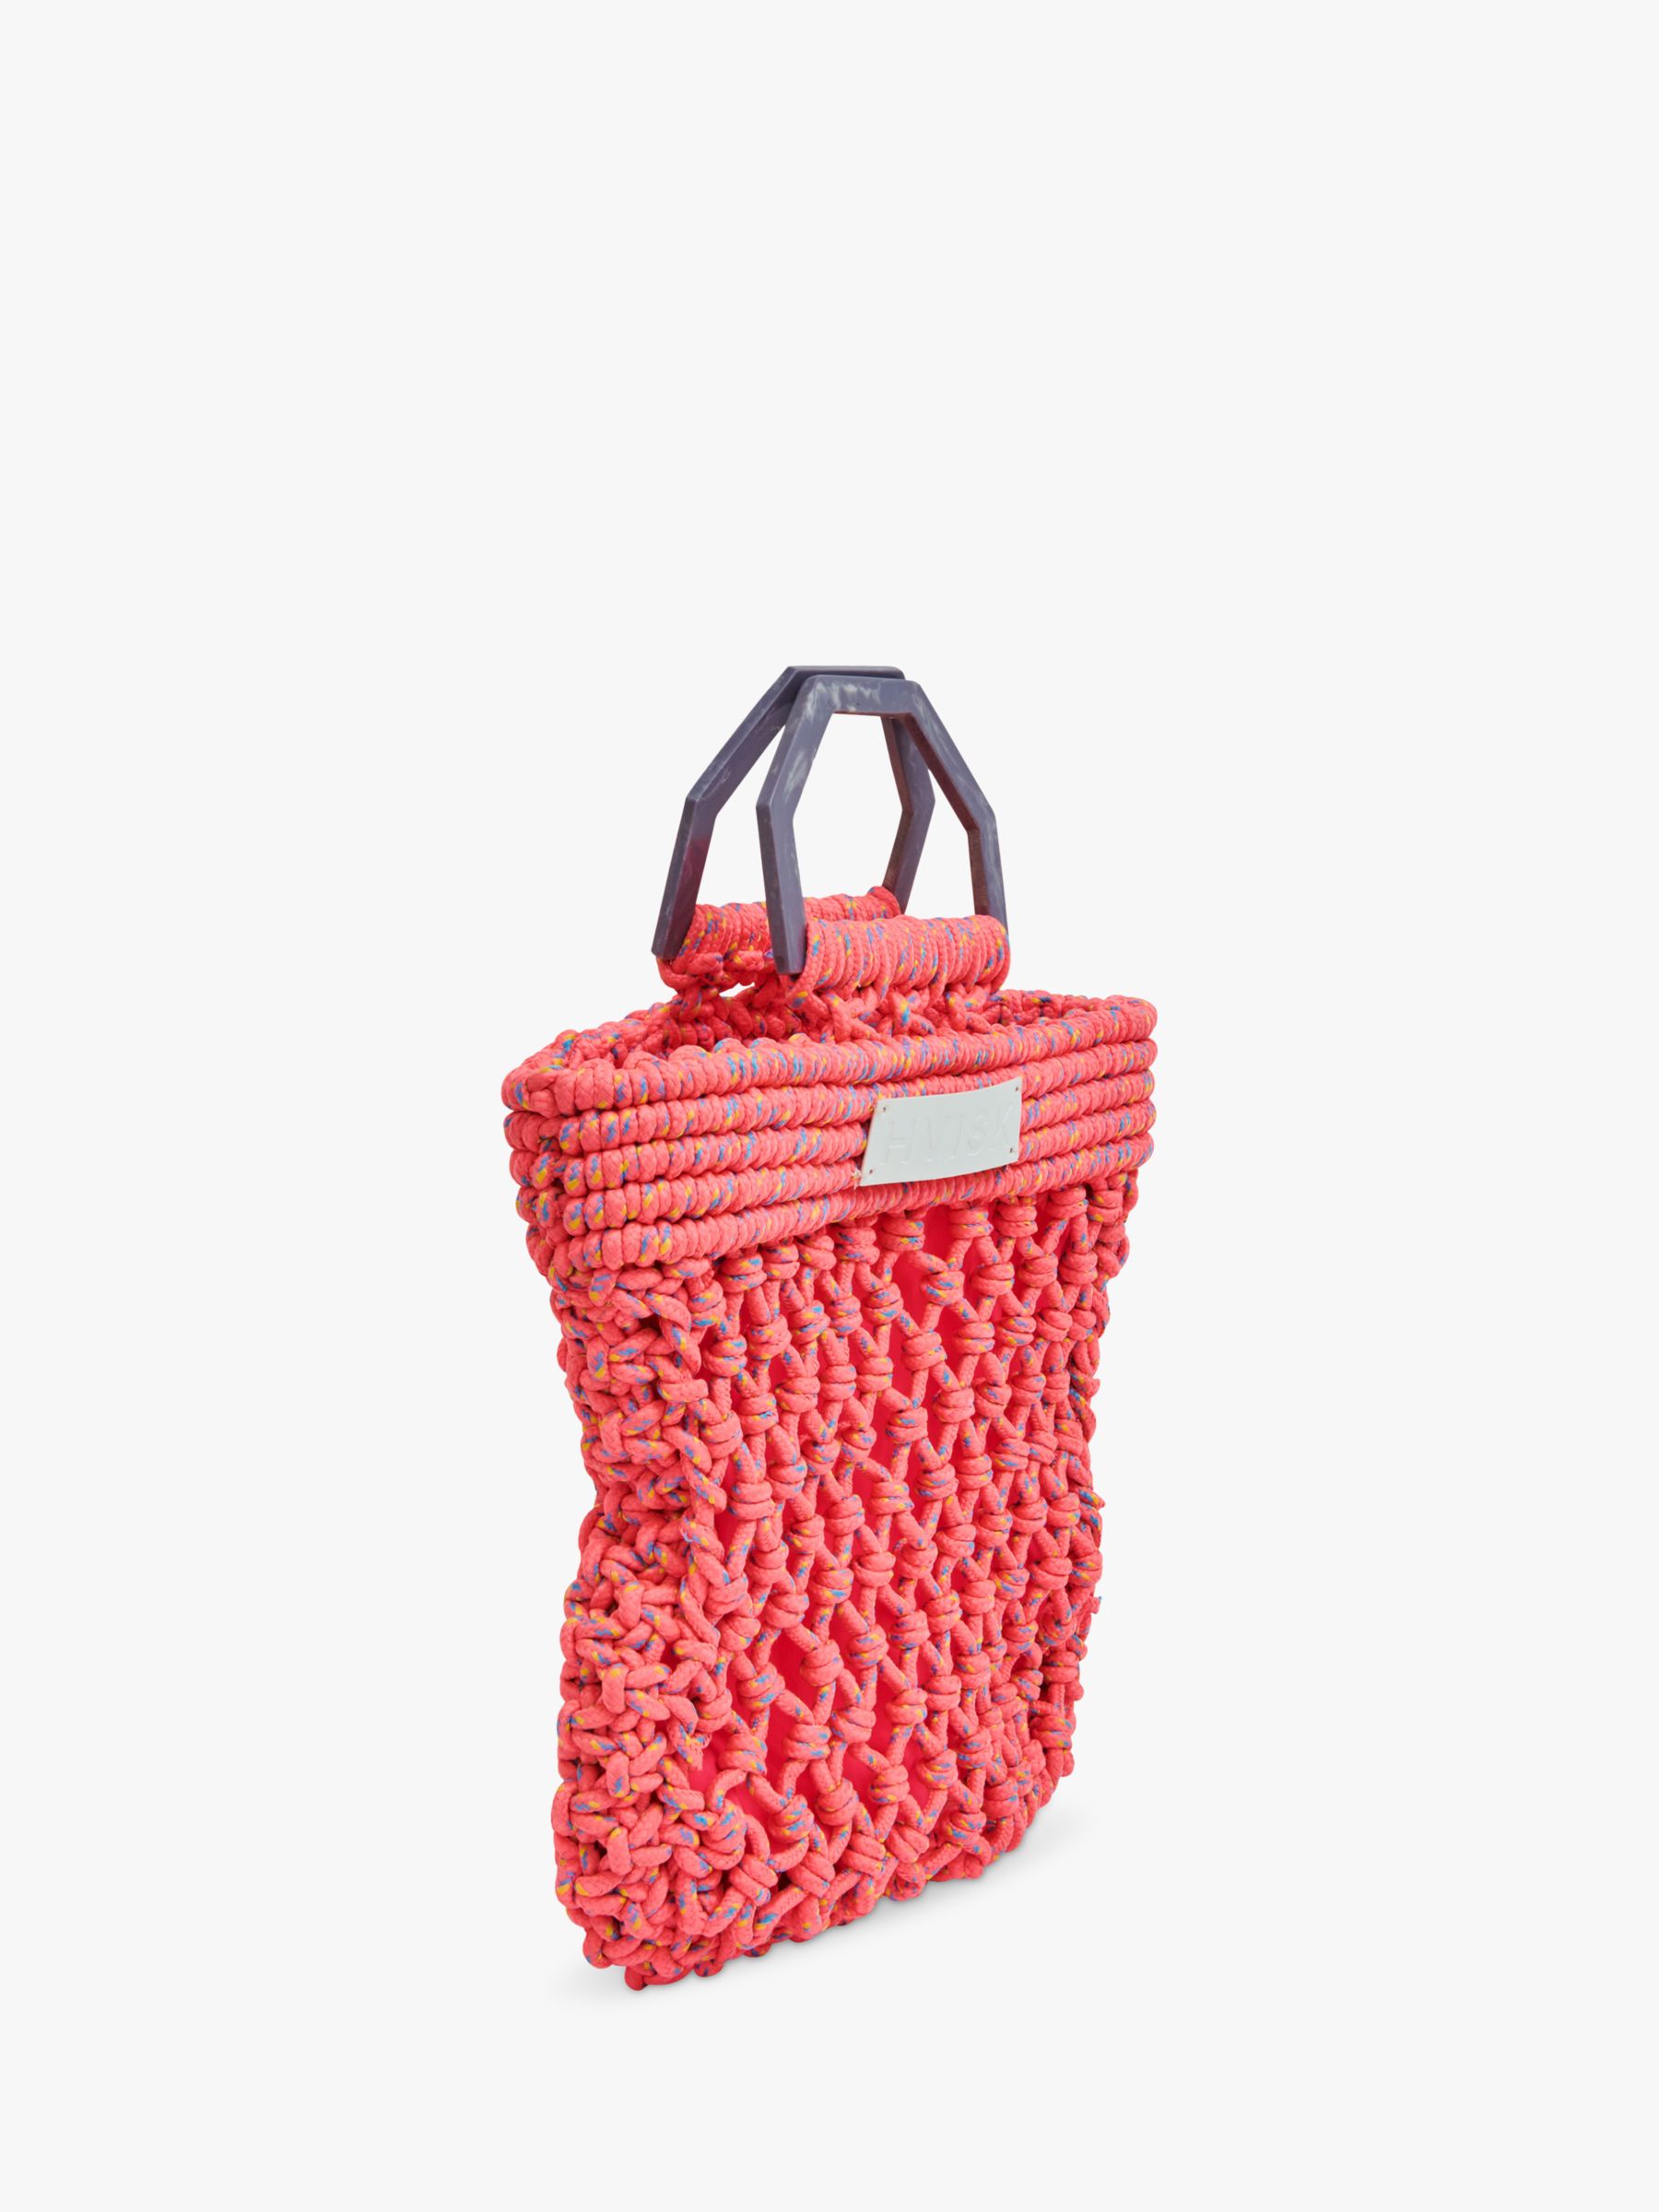 HVISK Merge String Macramé Grab Bag, Shocking Pink at John Lewis & Partners